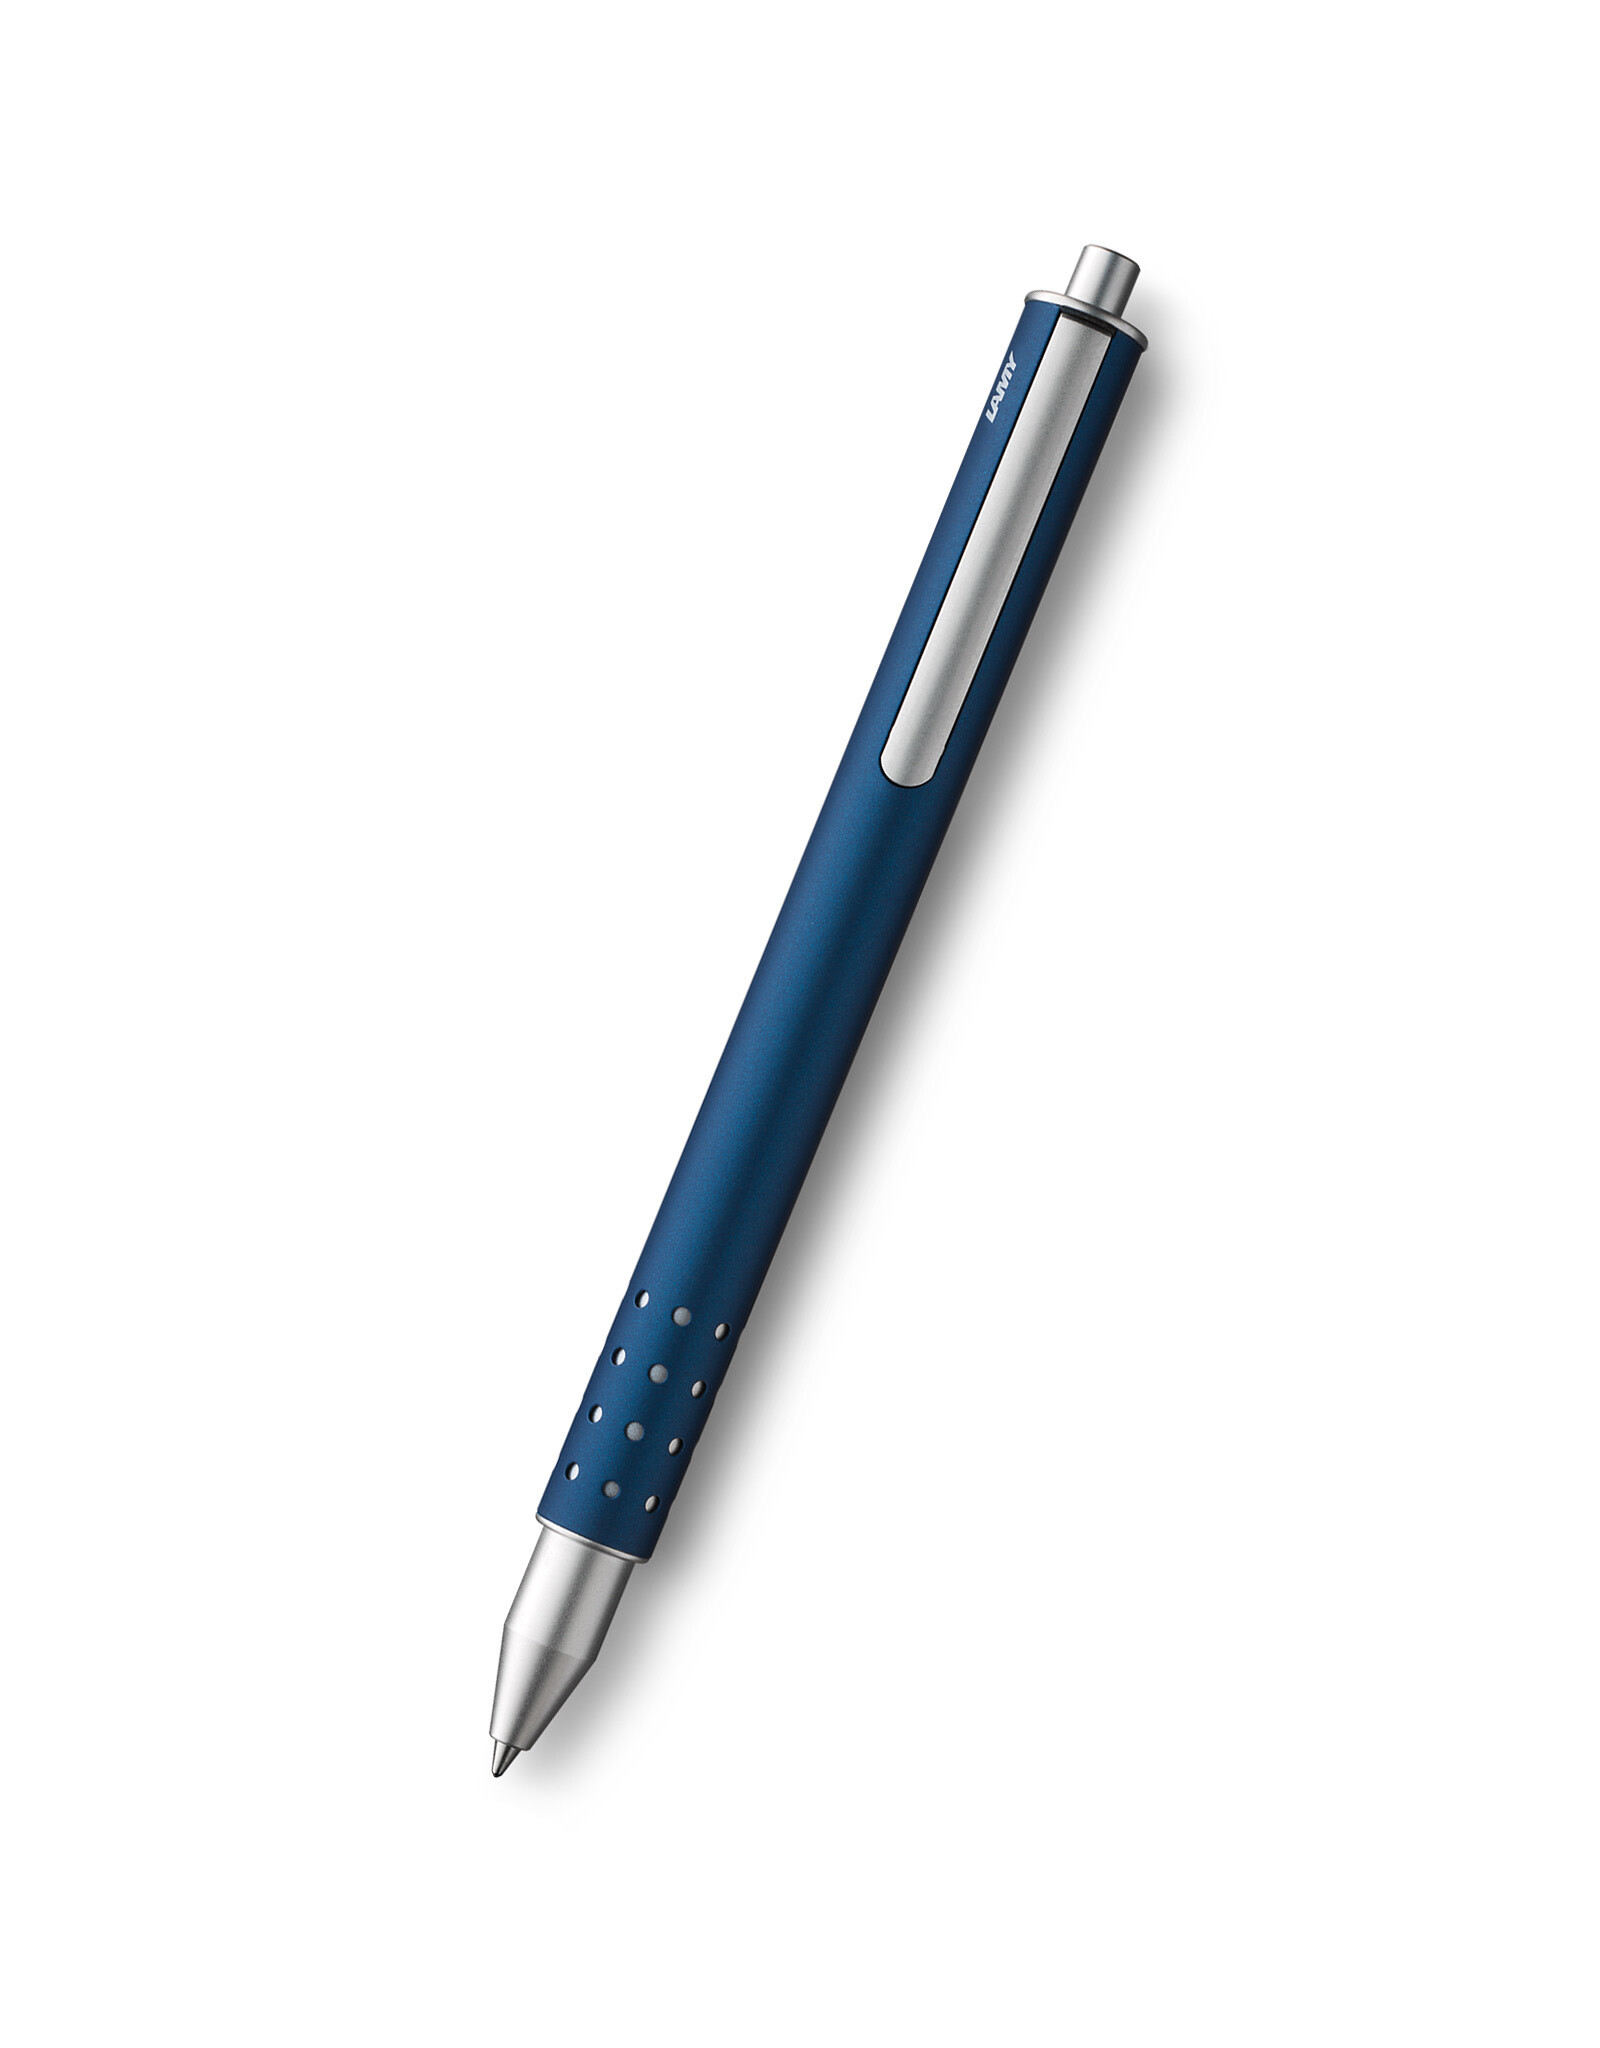 LAMY LAMY Swift Rollerball Pen, Imperial Blue